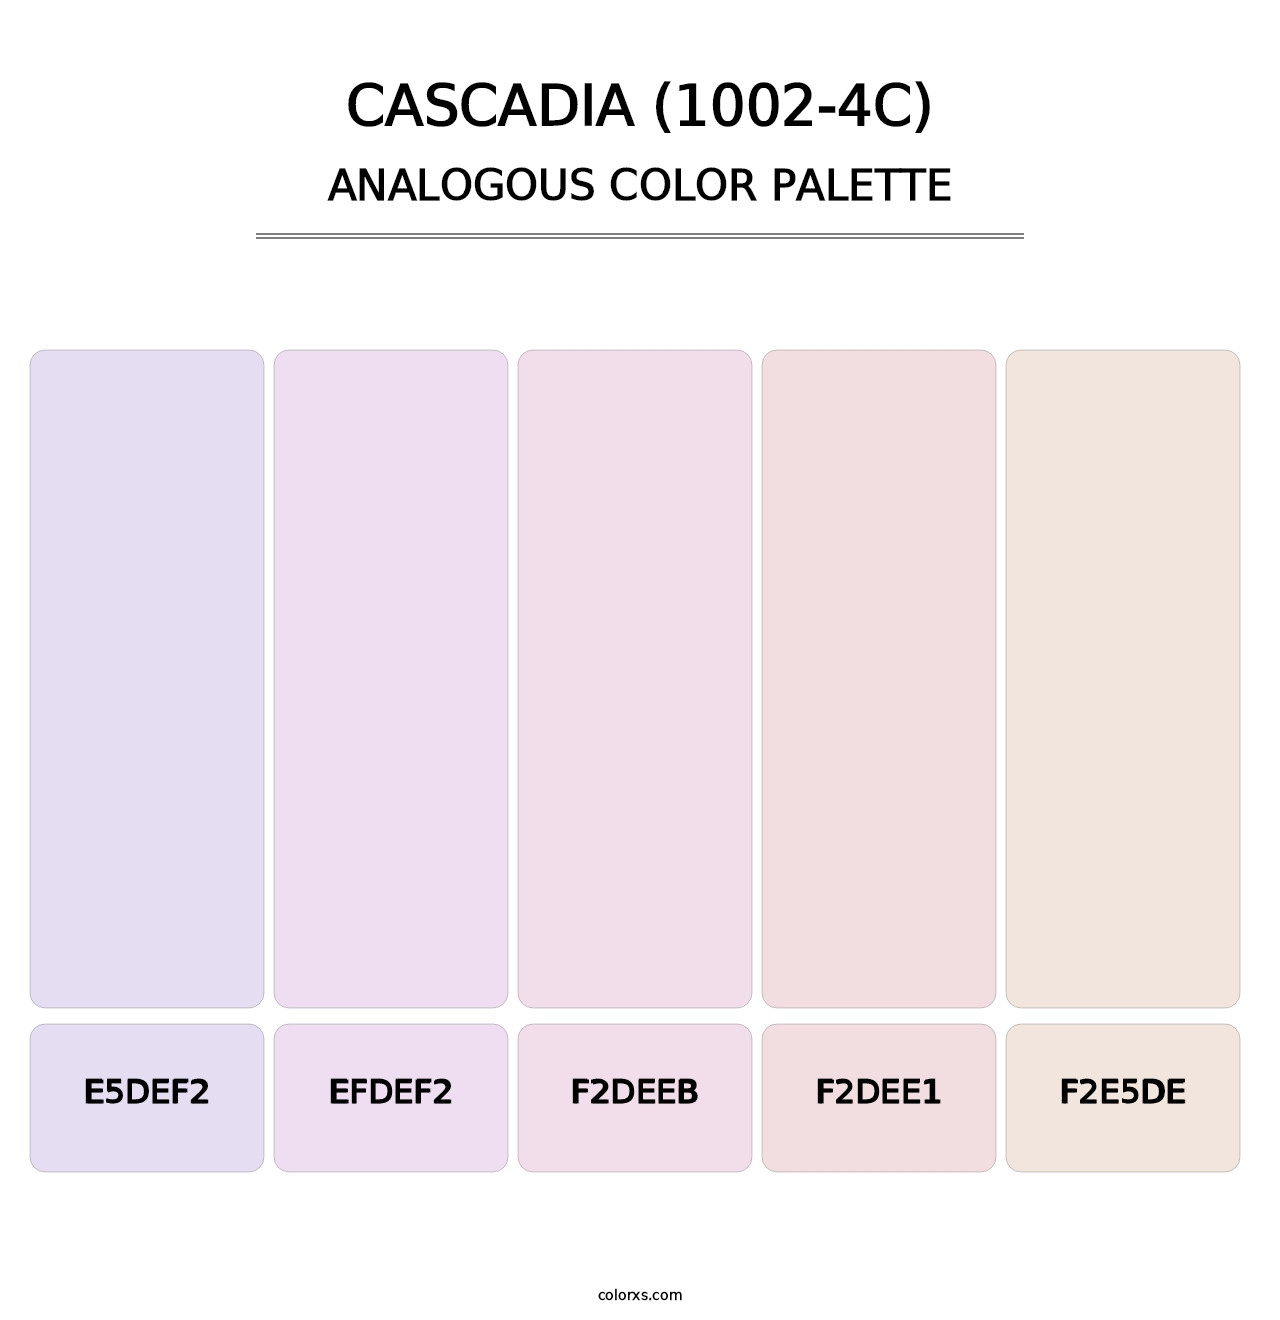 Cascadia (1002-4C) - Analogous Color Palette